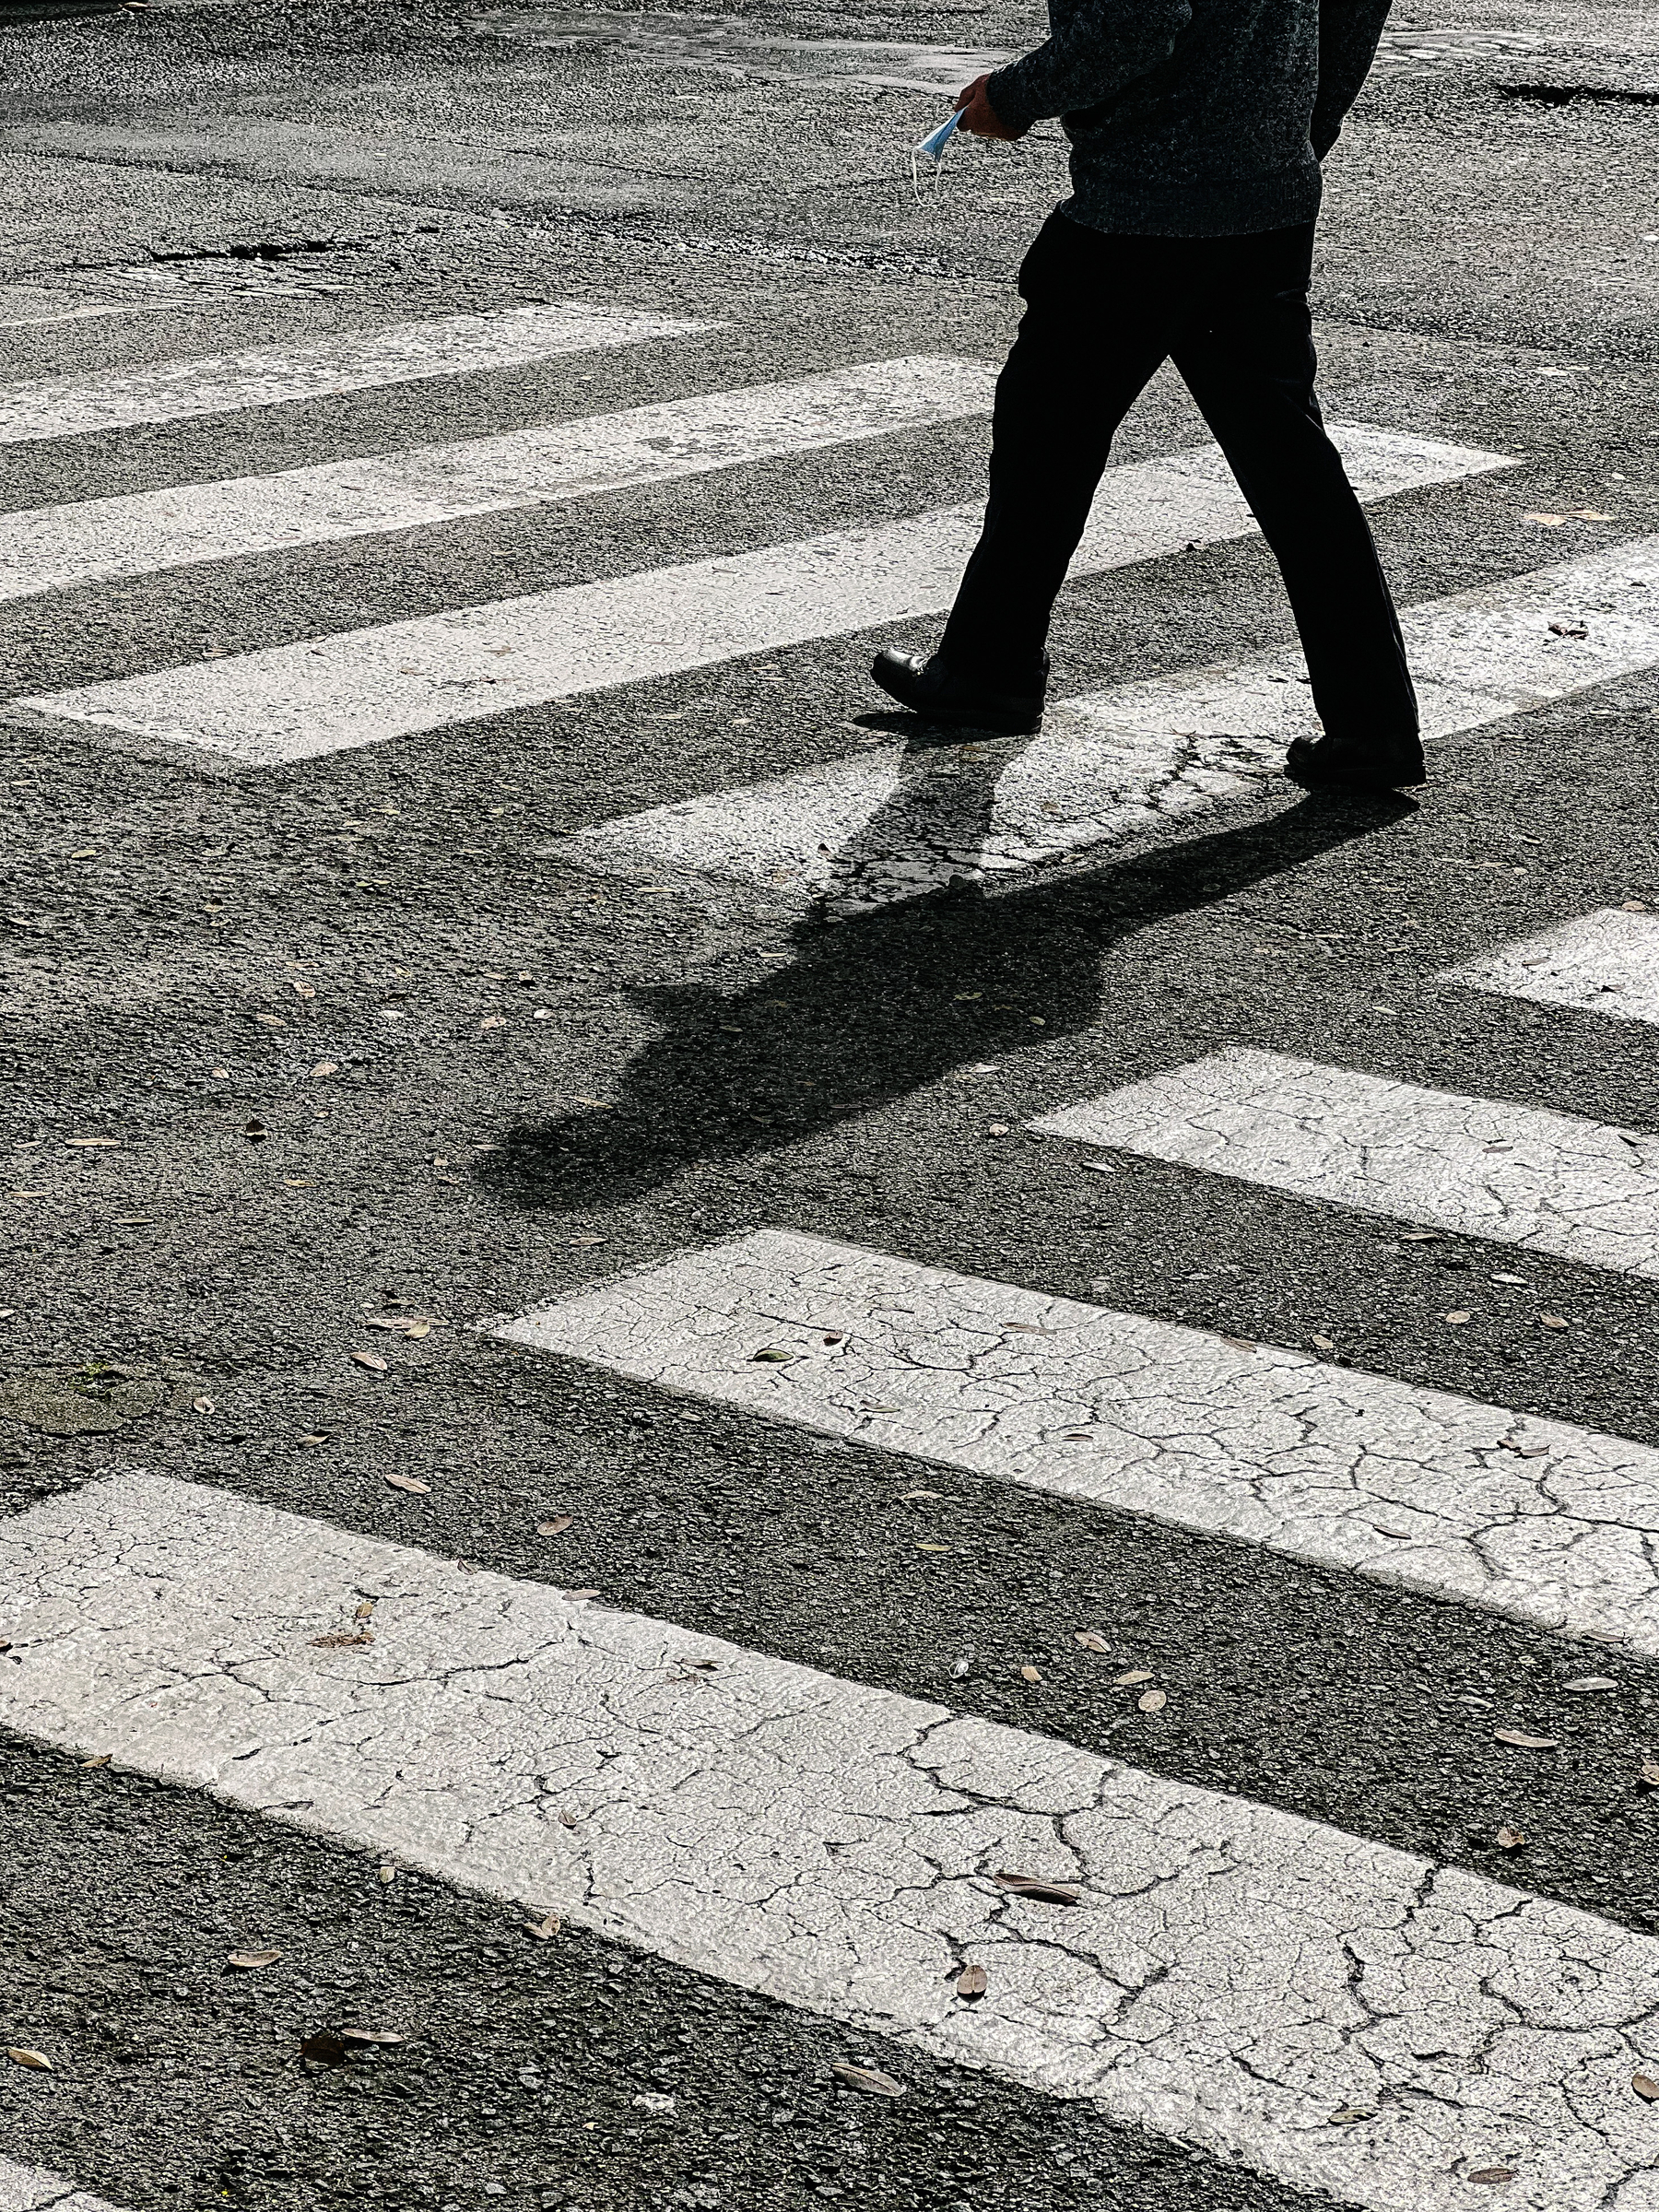 A man is seen walking on a crosswalk.